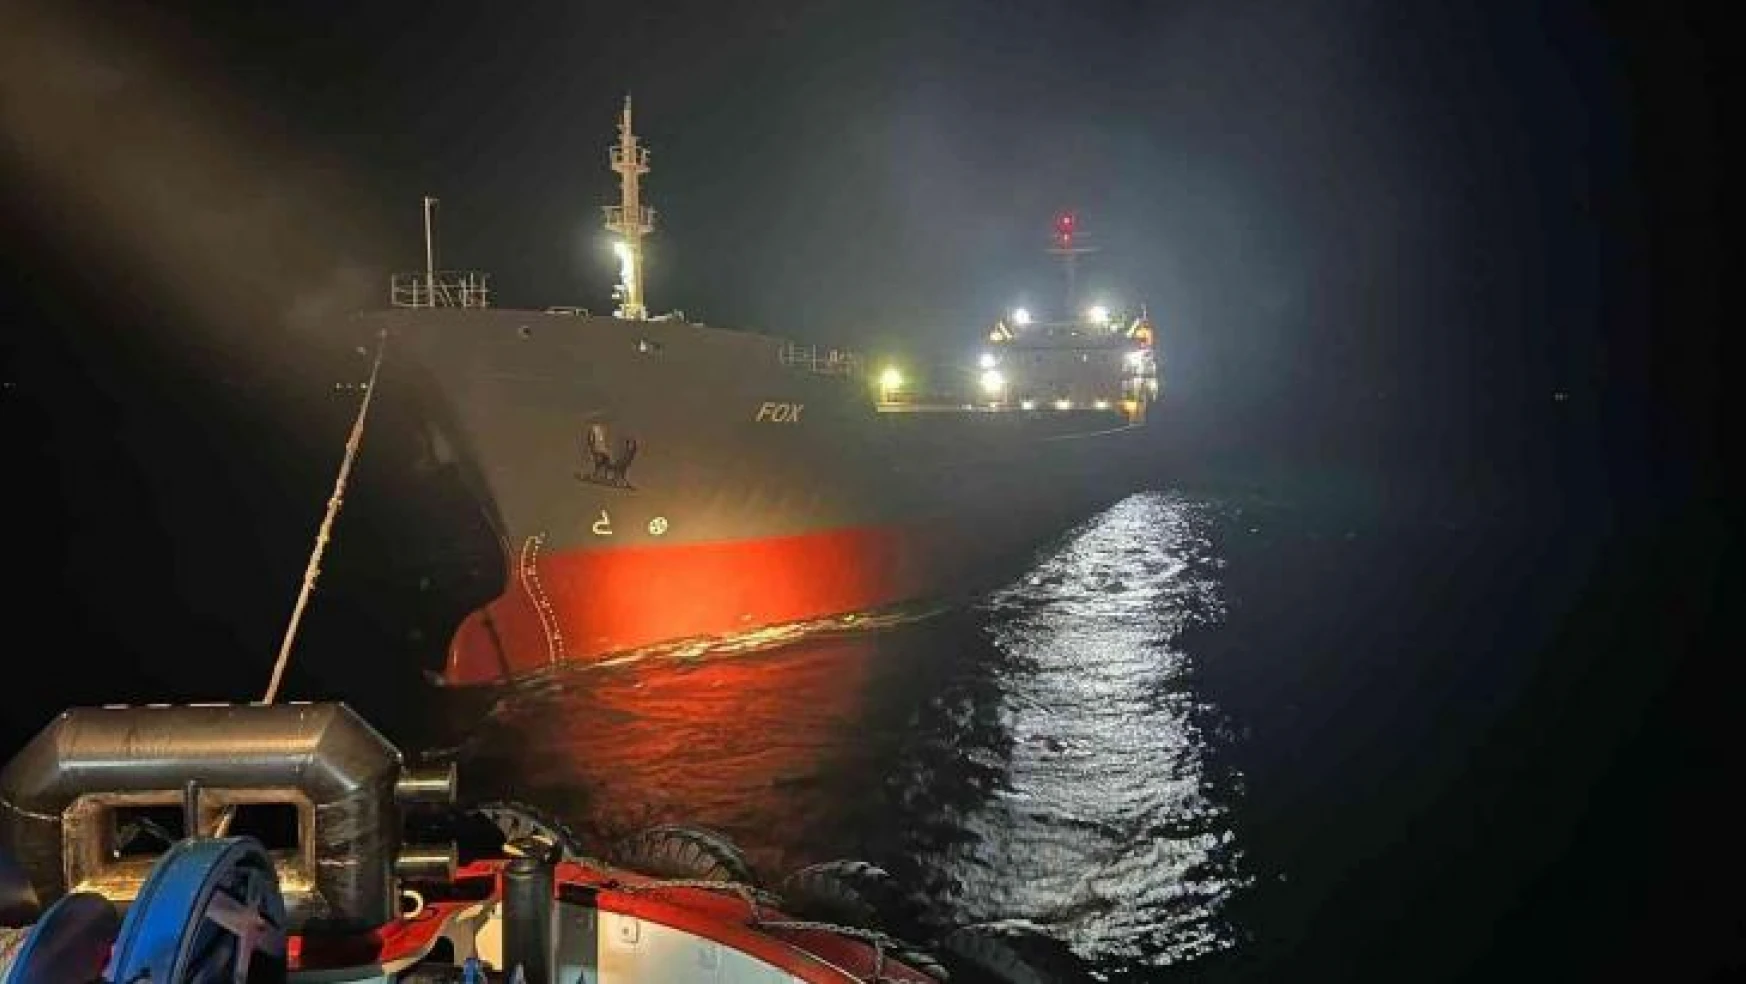 İstanbul Boğazı'nda 120 metre boyundaki kargo gemisi arızalandı